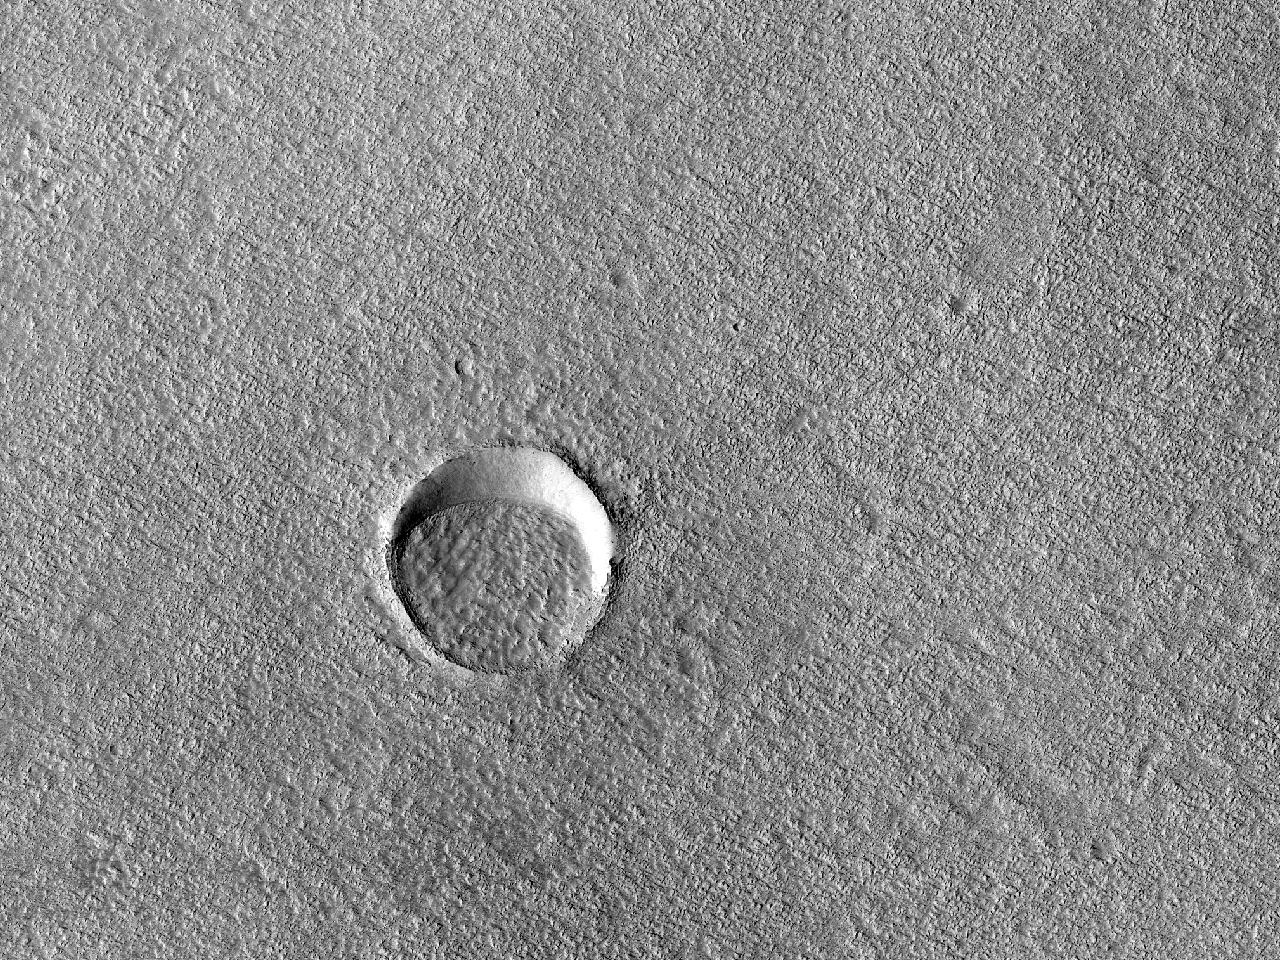 Malgranda kratero parte pleniĝita kun sedimento